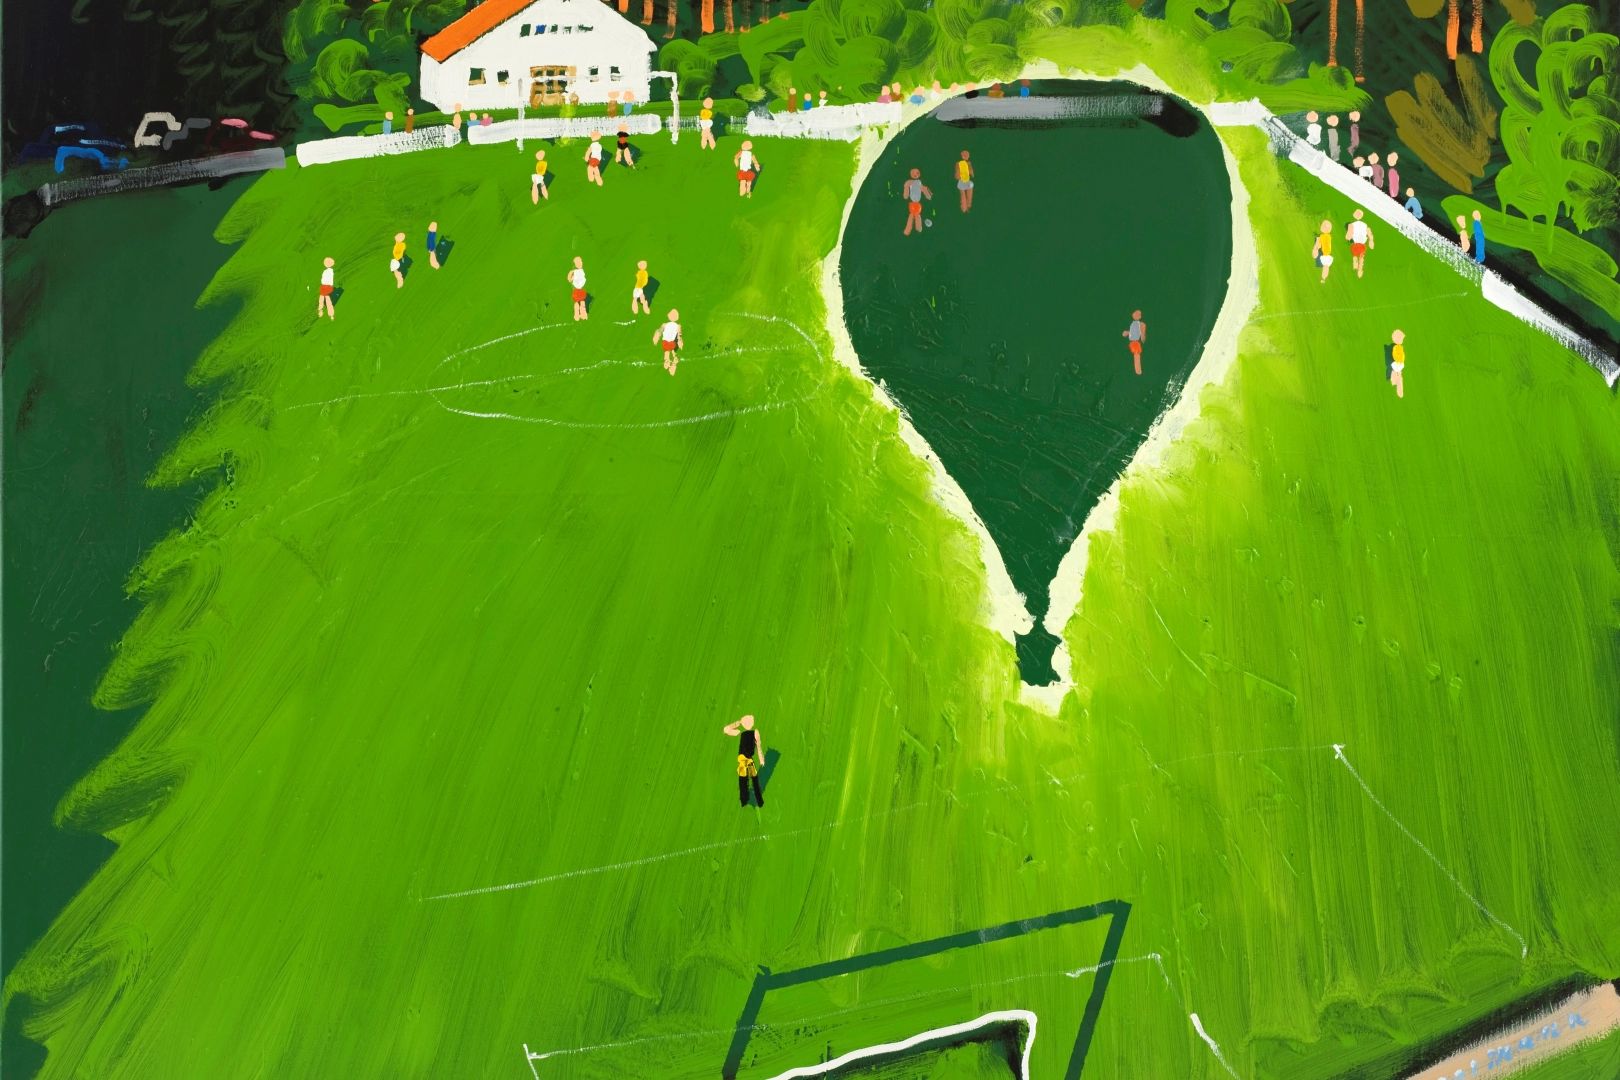 Na kopanou do galerie. Výstava v Chebu zkoumá zobrazení fotbalu v českém výtvarném umění